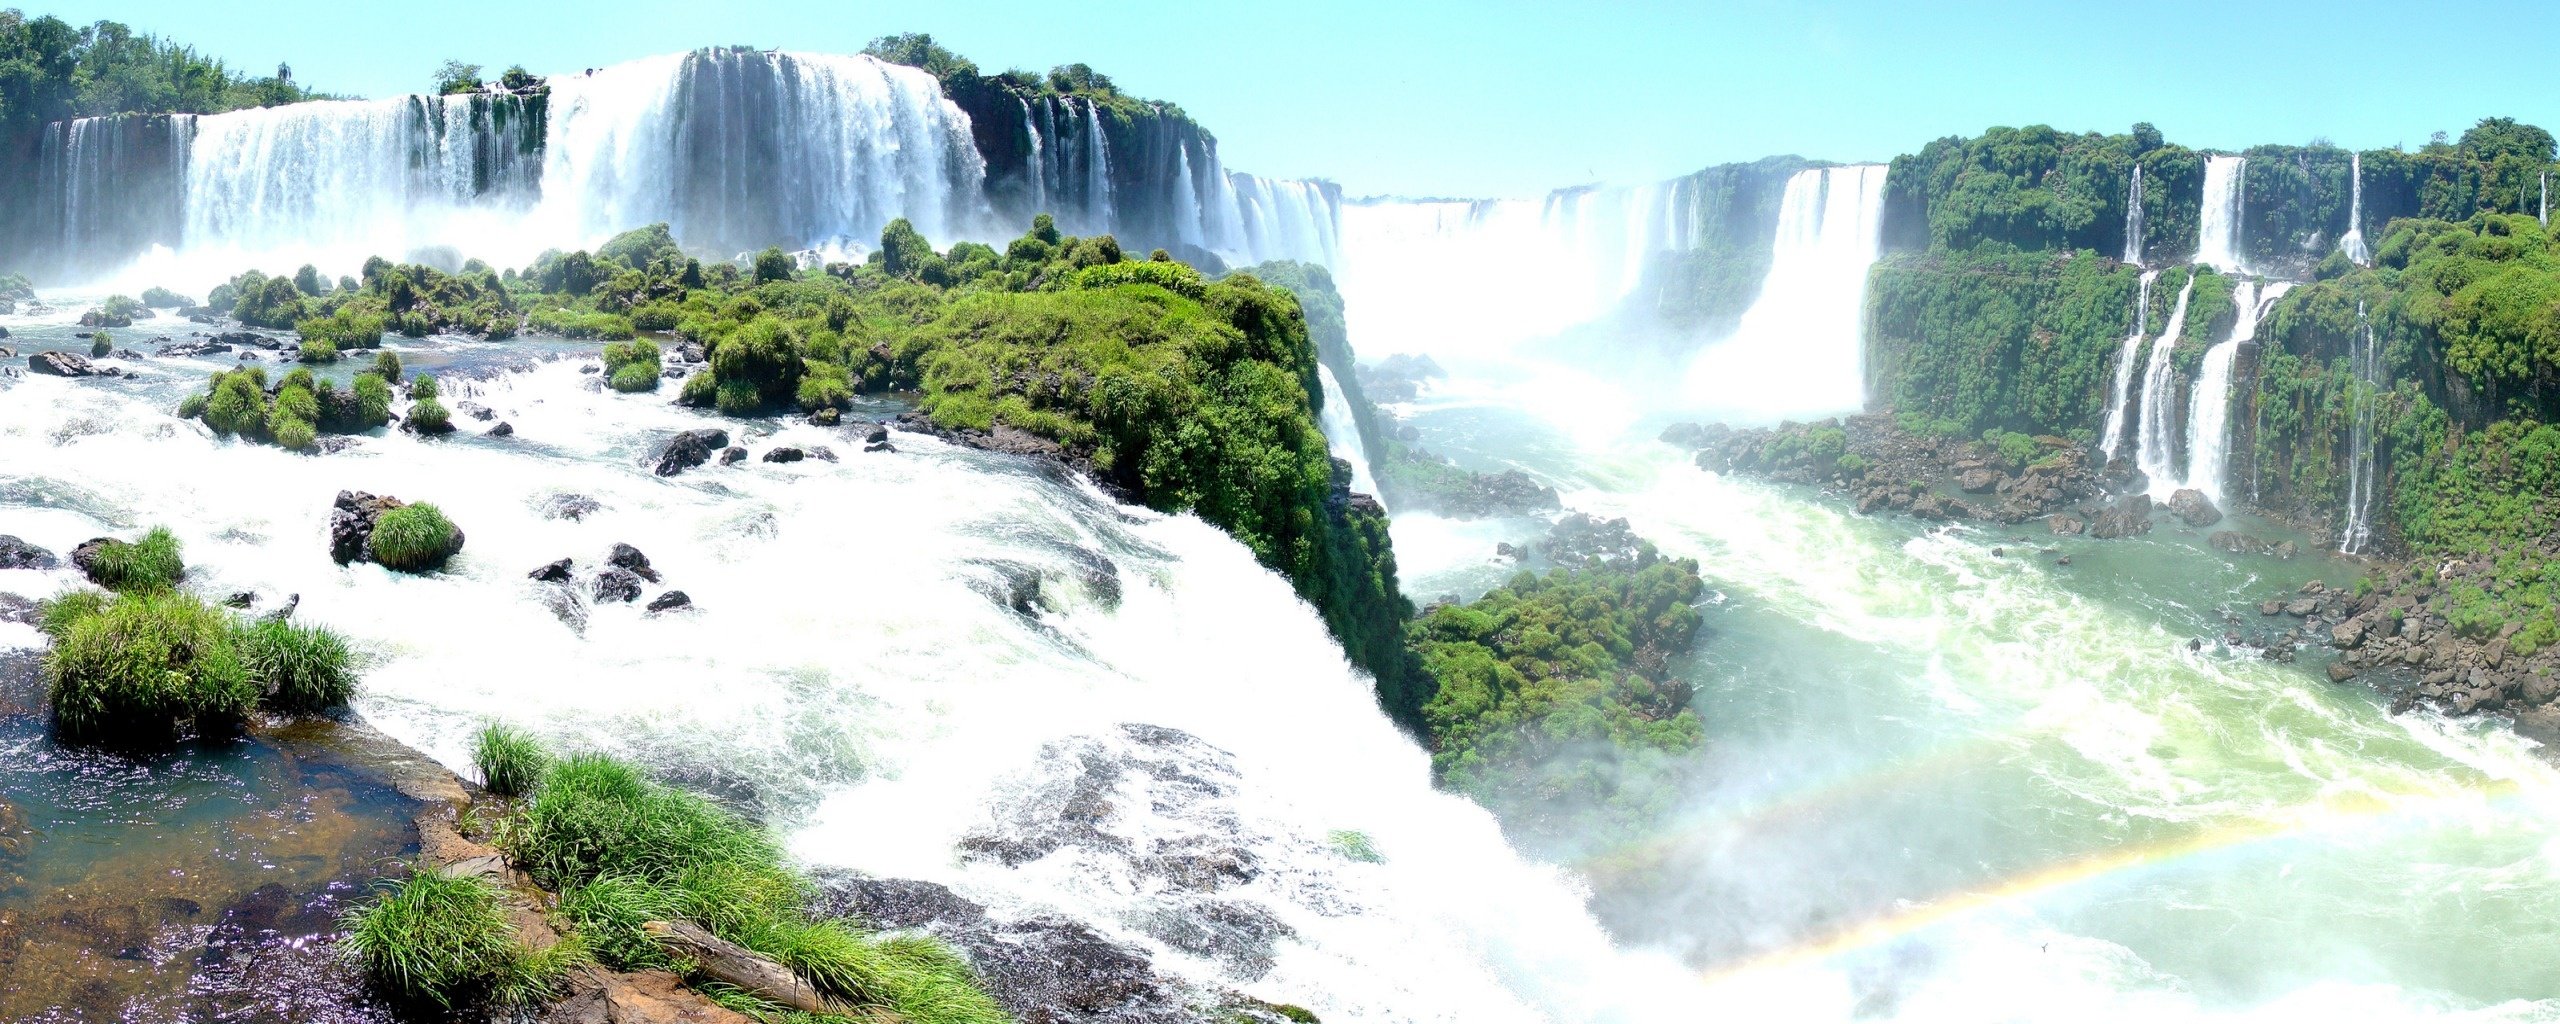 Iguassu Falls Panorama Dual Monitor Wallpaper in jpg format